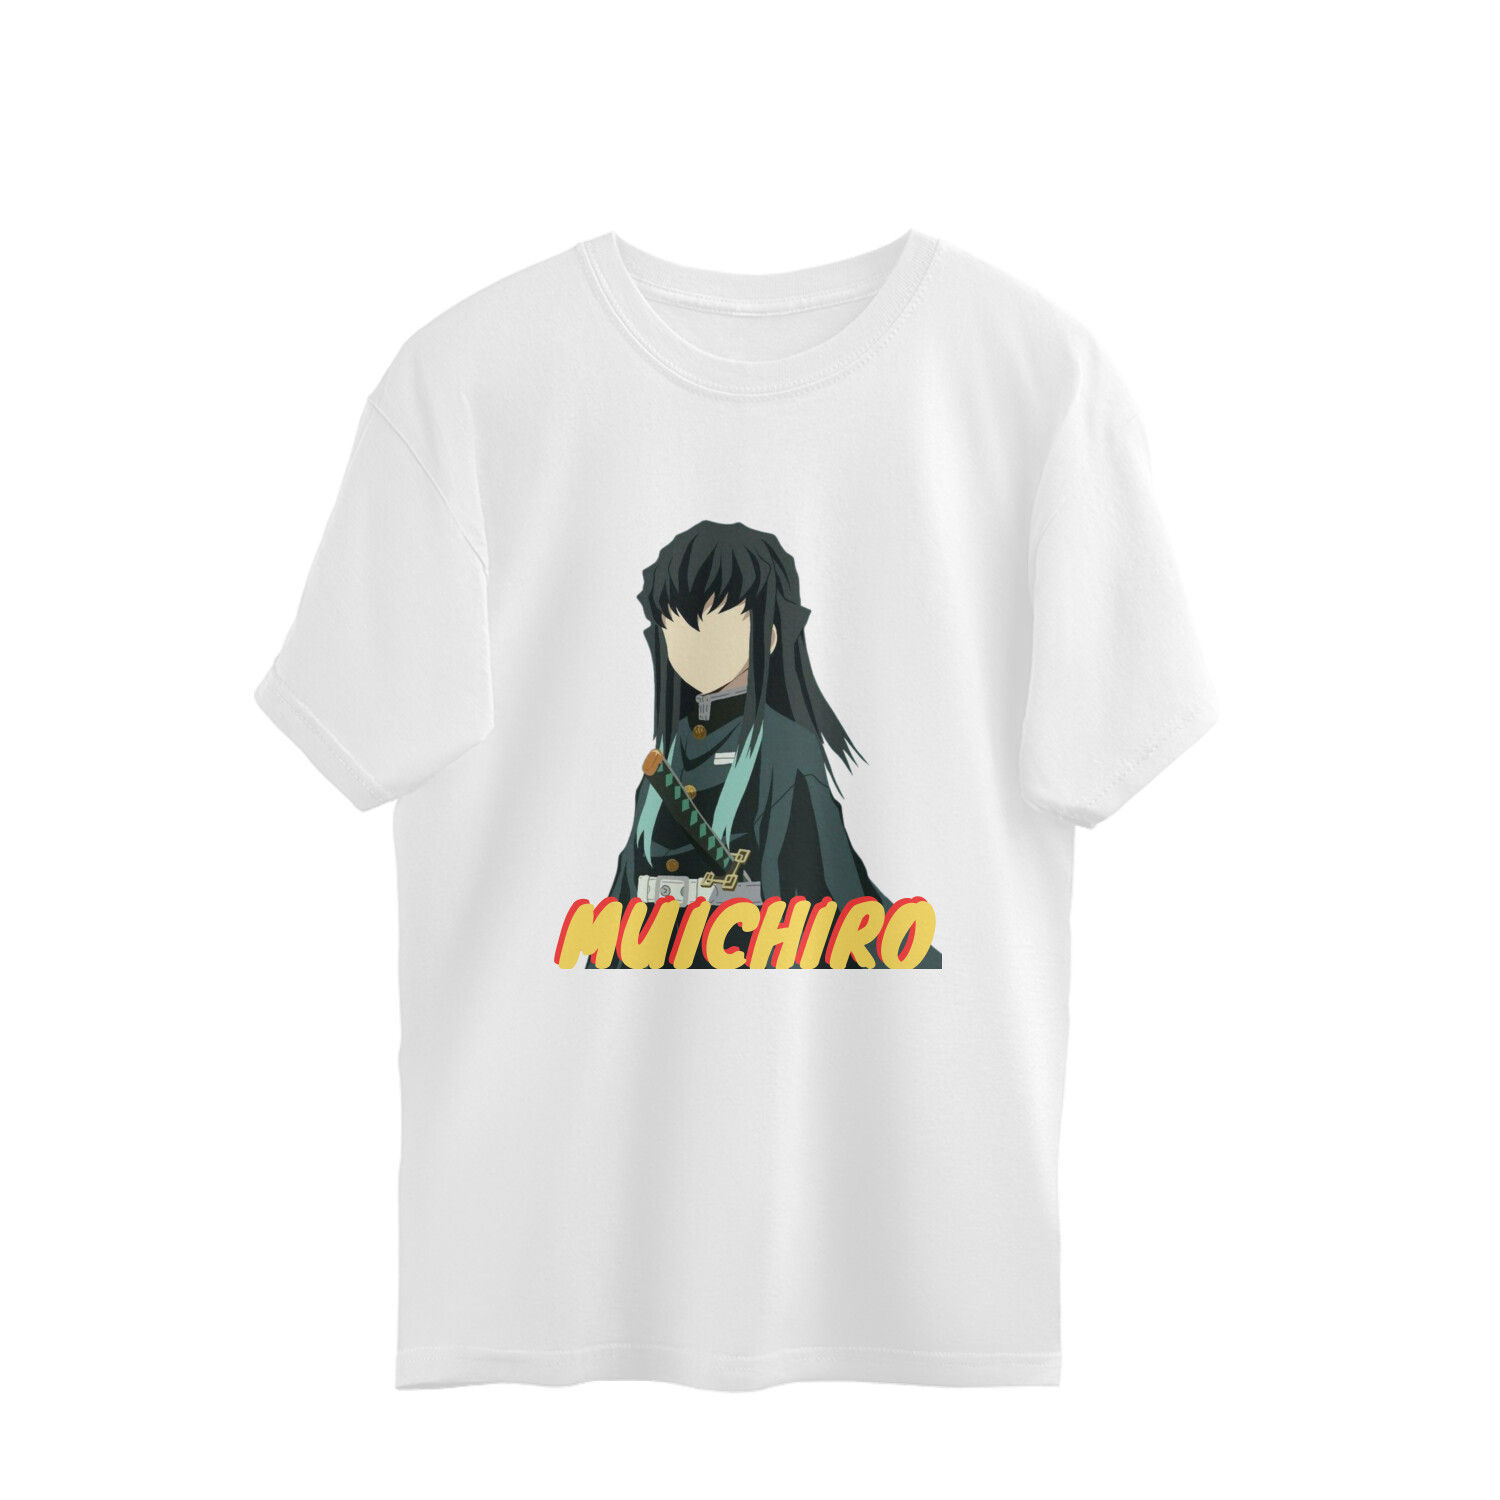 muichiro oversized t-shirt